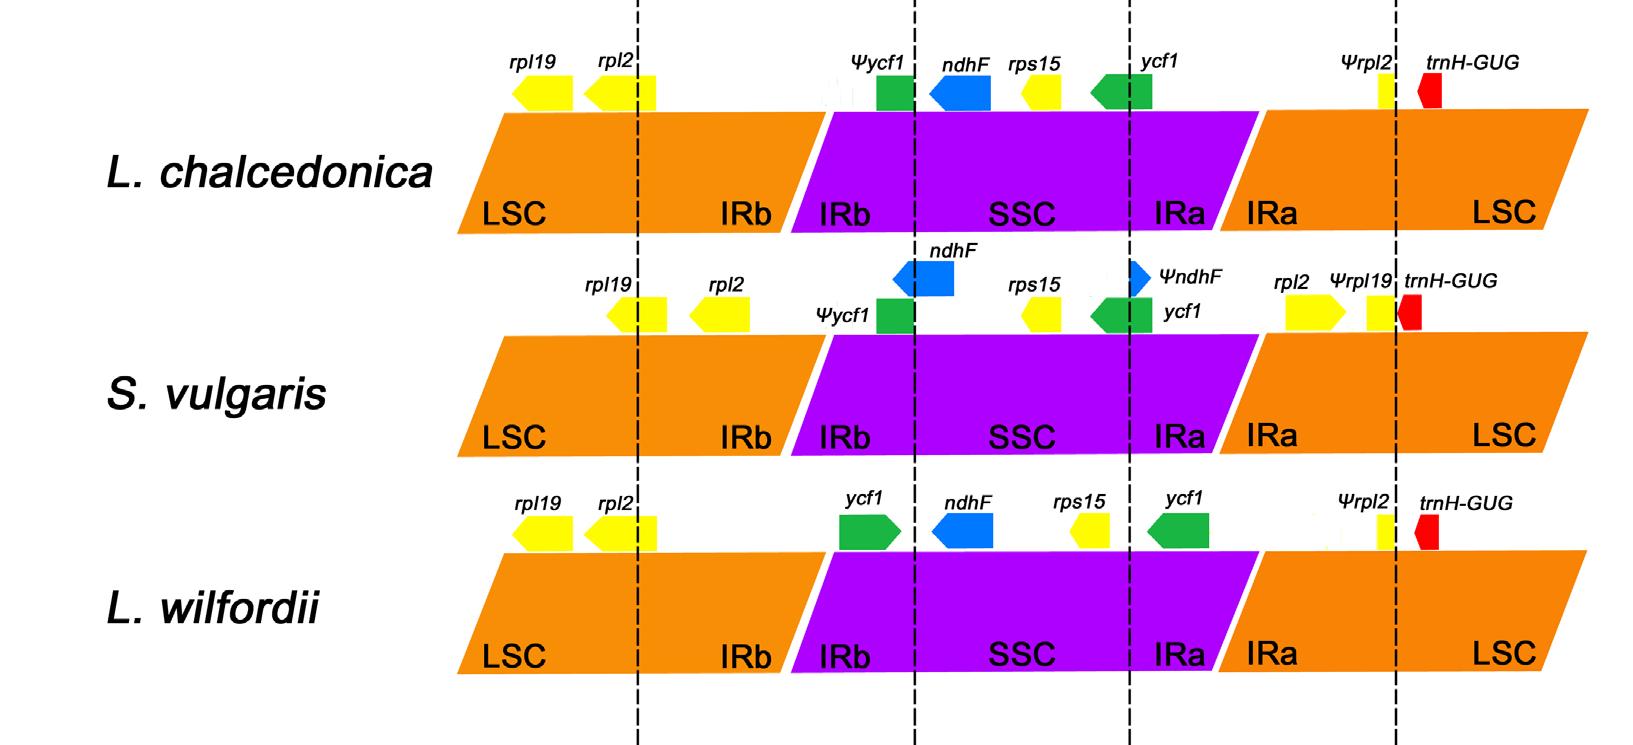 제비동자꽃과 근연종간 LSC, SSC, IR 지역 연결구간 비교